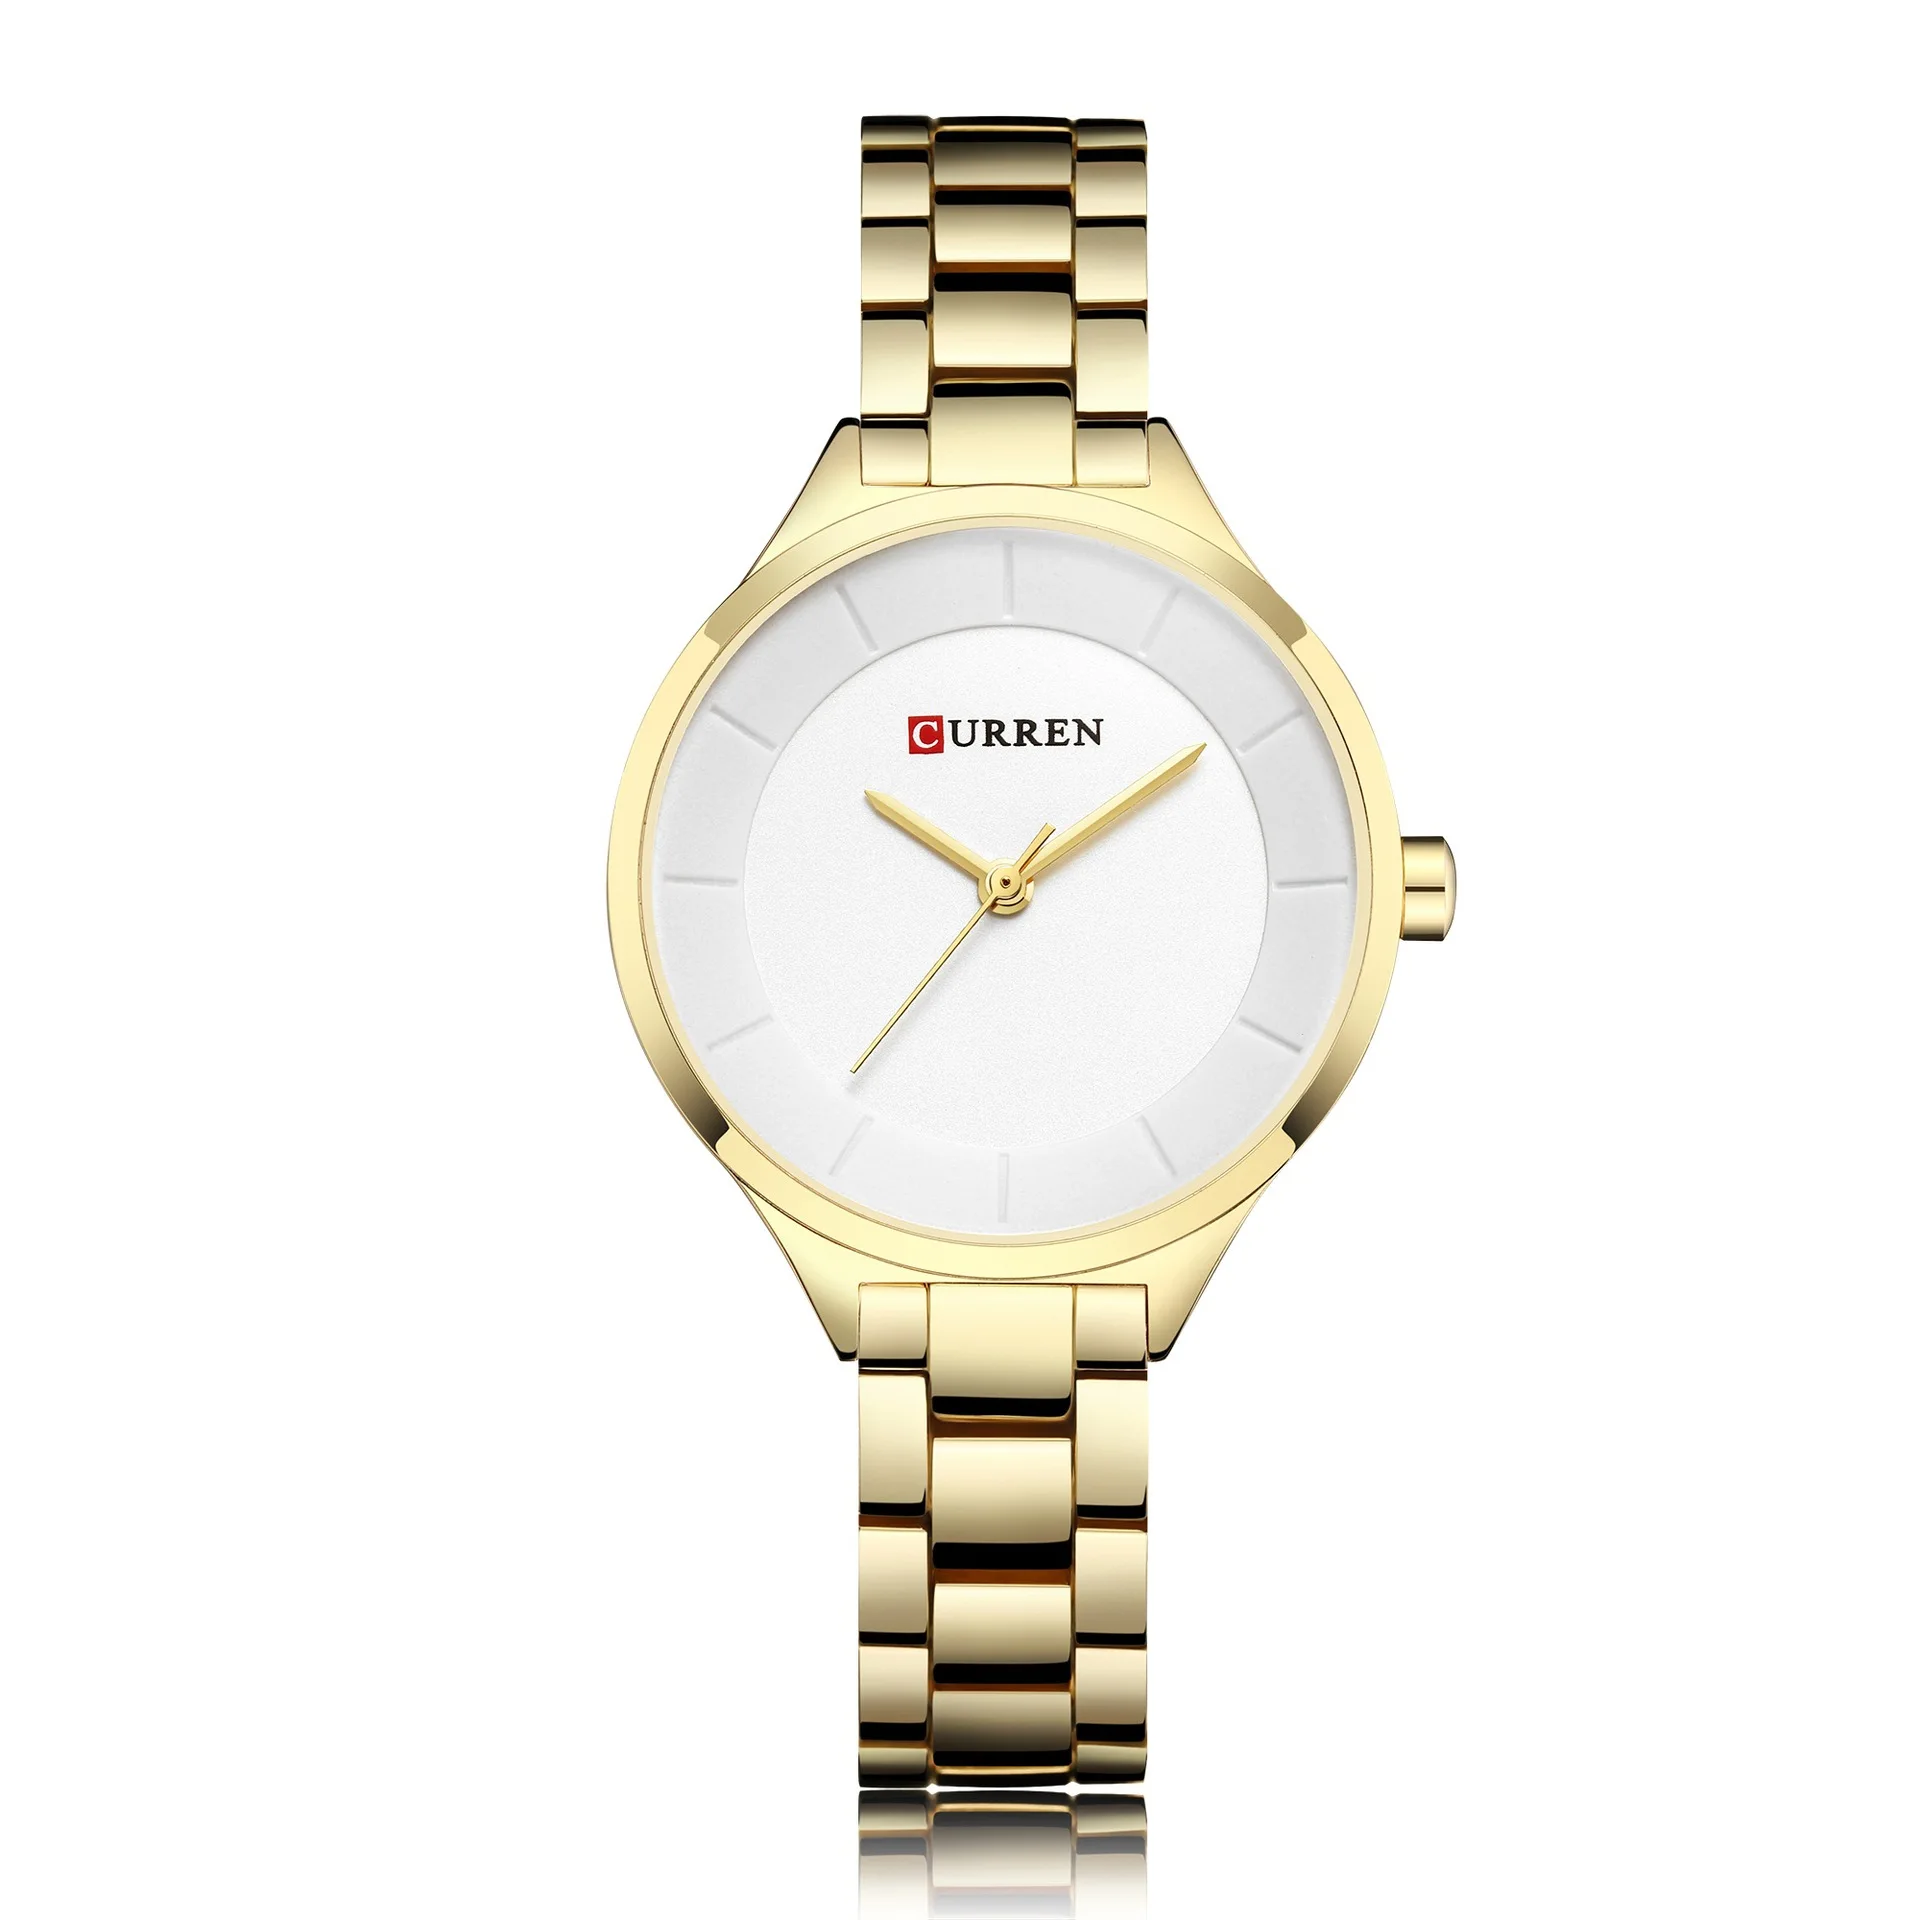 CURREN Populares da Cor do Ouro Mulheres Relógios de 33mm Senhoras Relógio Feminino Fashion Gilrs Pulseira Relógios Montre Femme Feminino Relógio